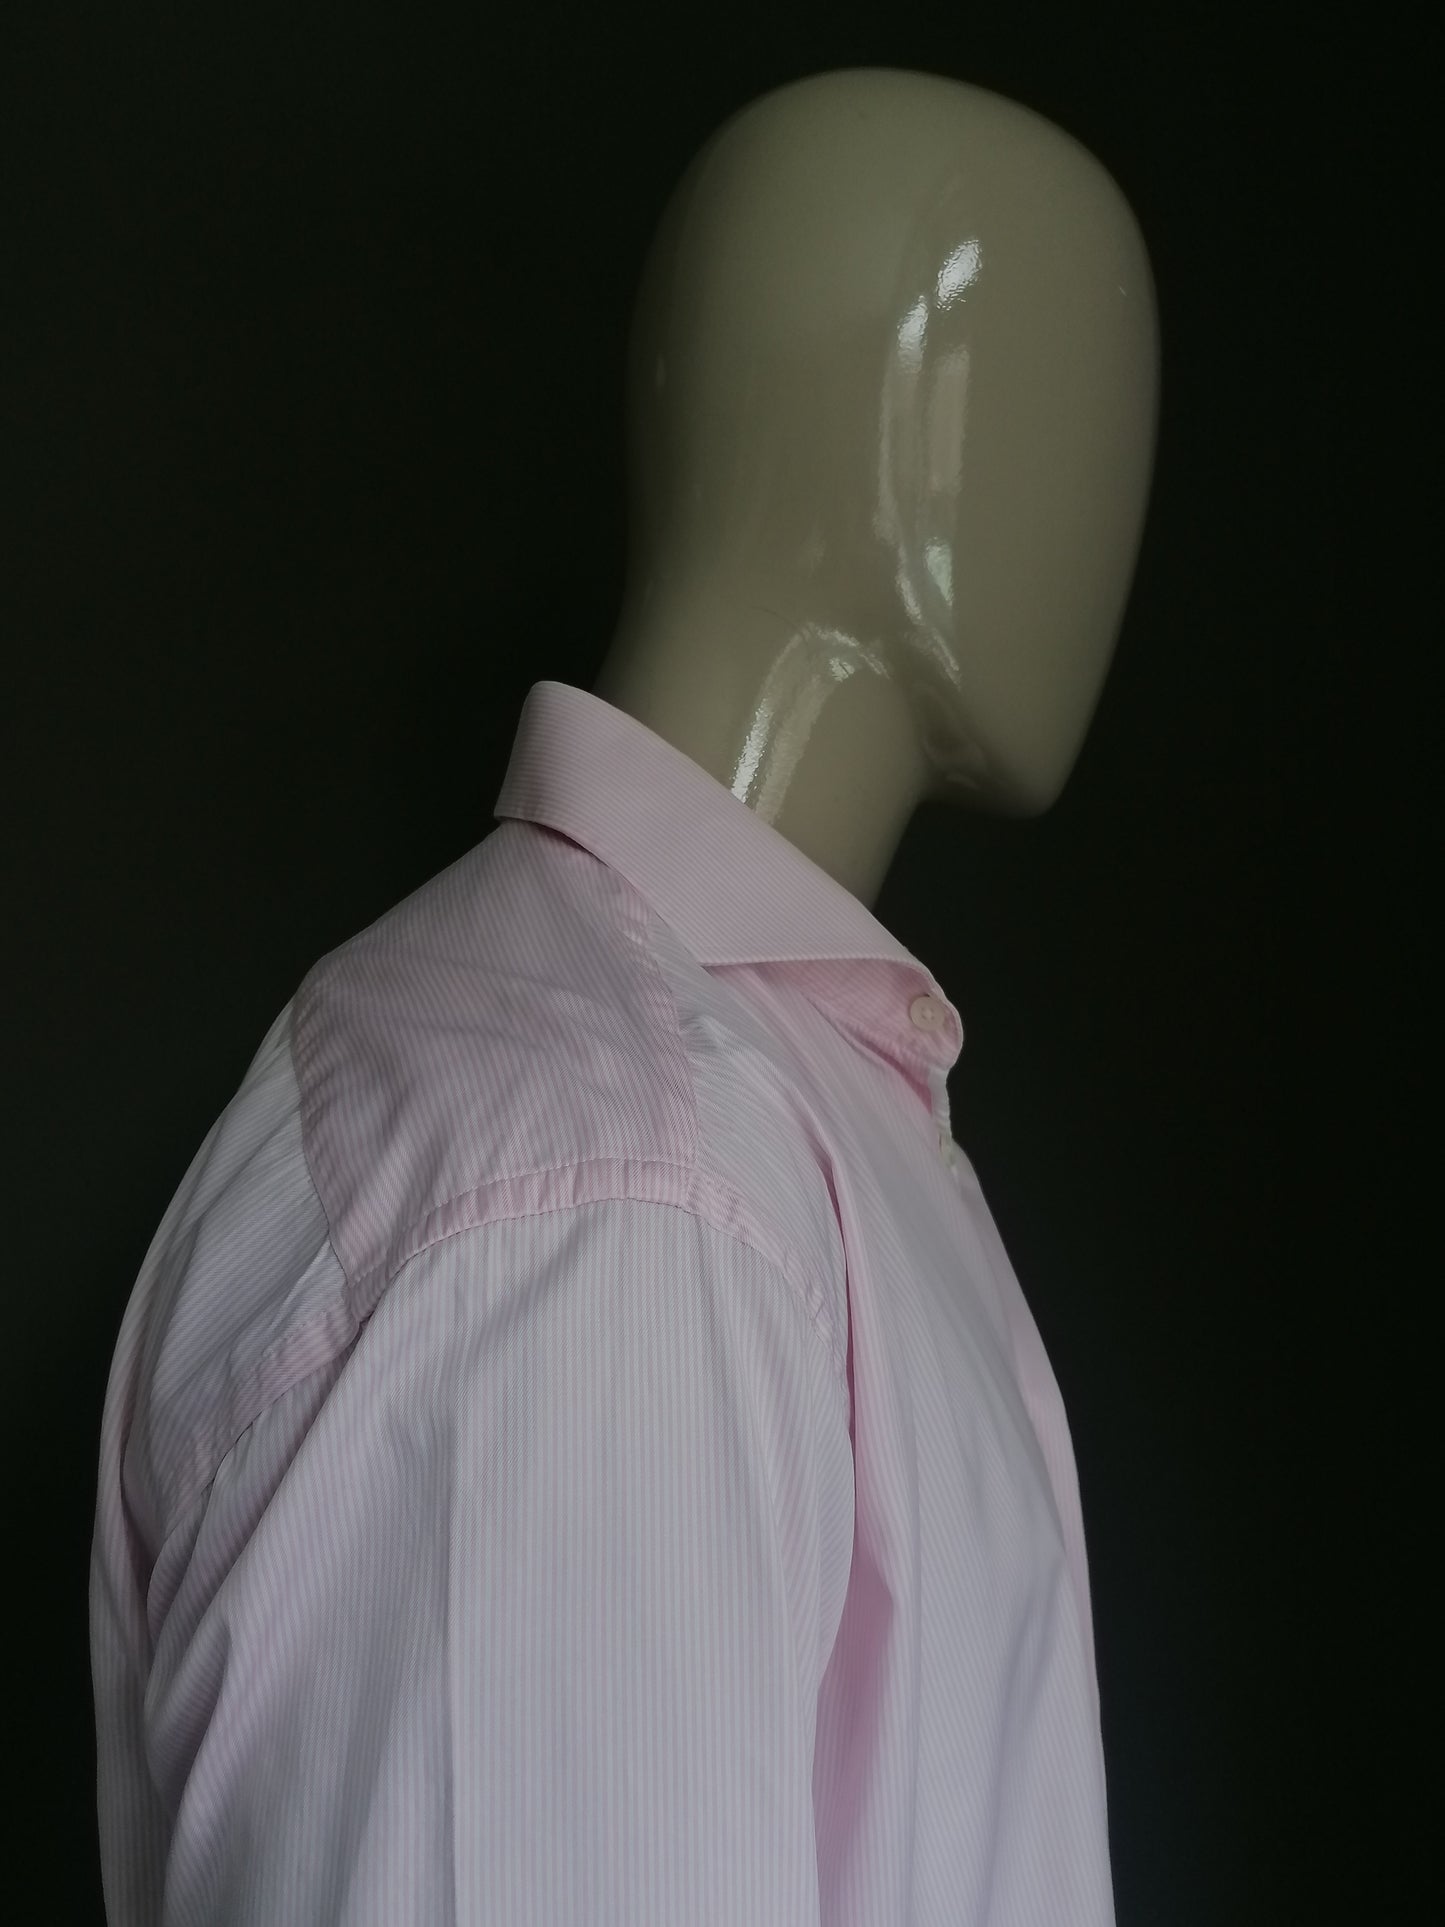 Circle of Gentlemen overhemd. Roze Wit gestreept. Maat 43 / XL. Dressed.